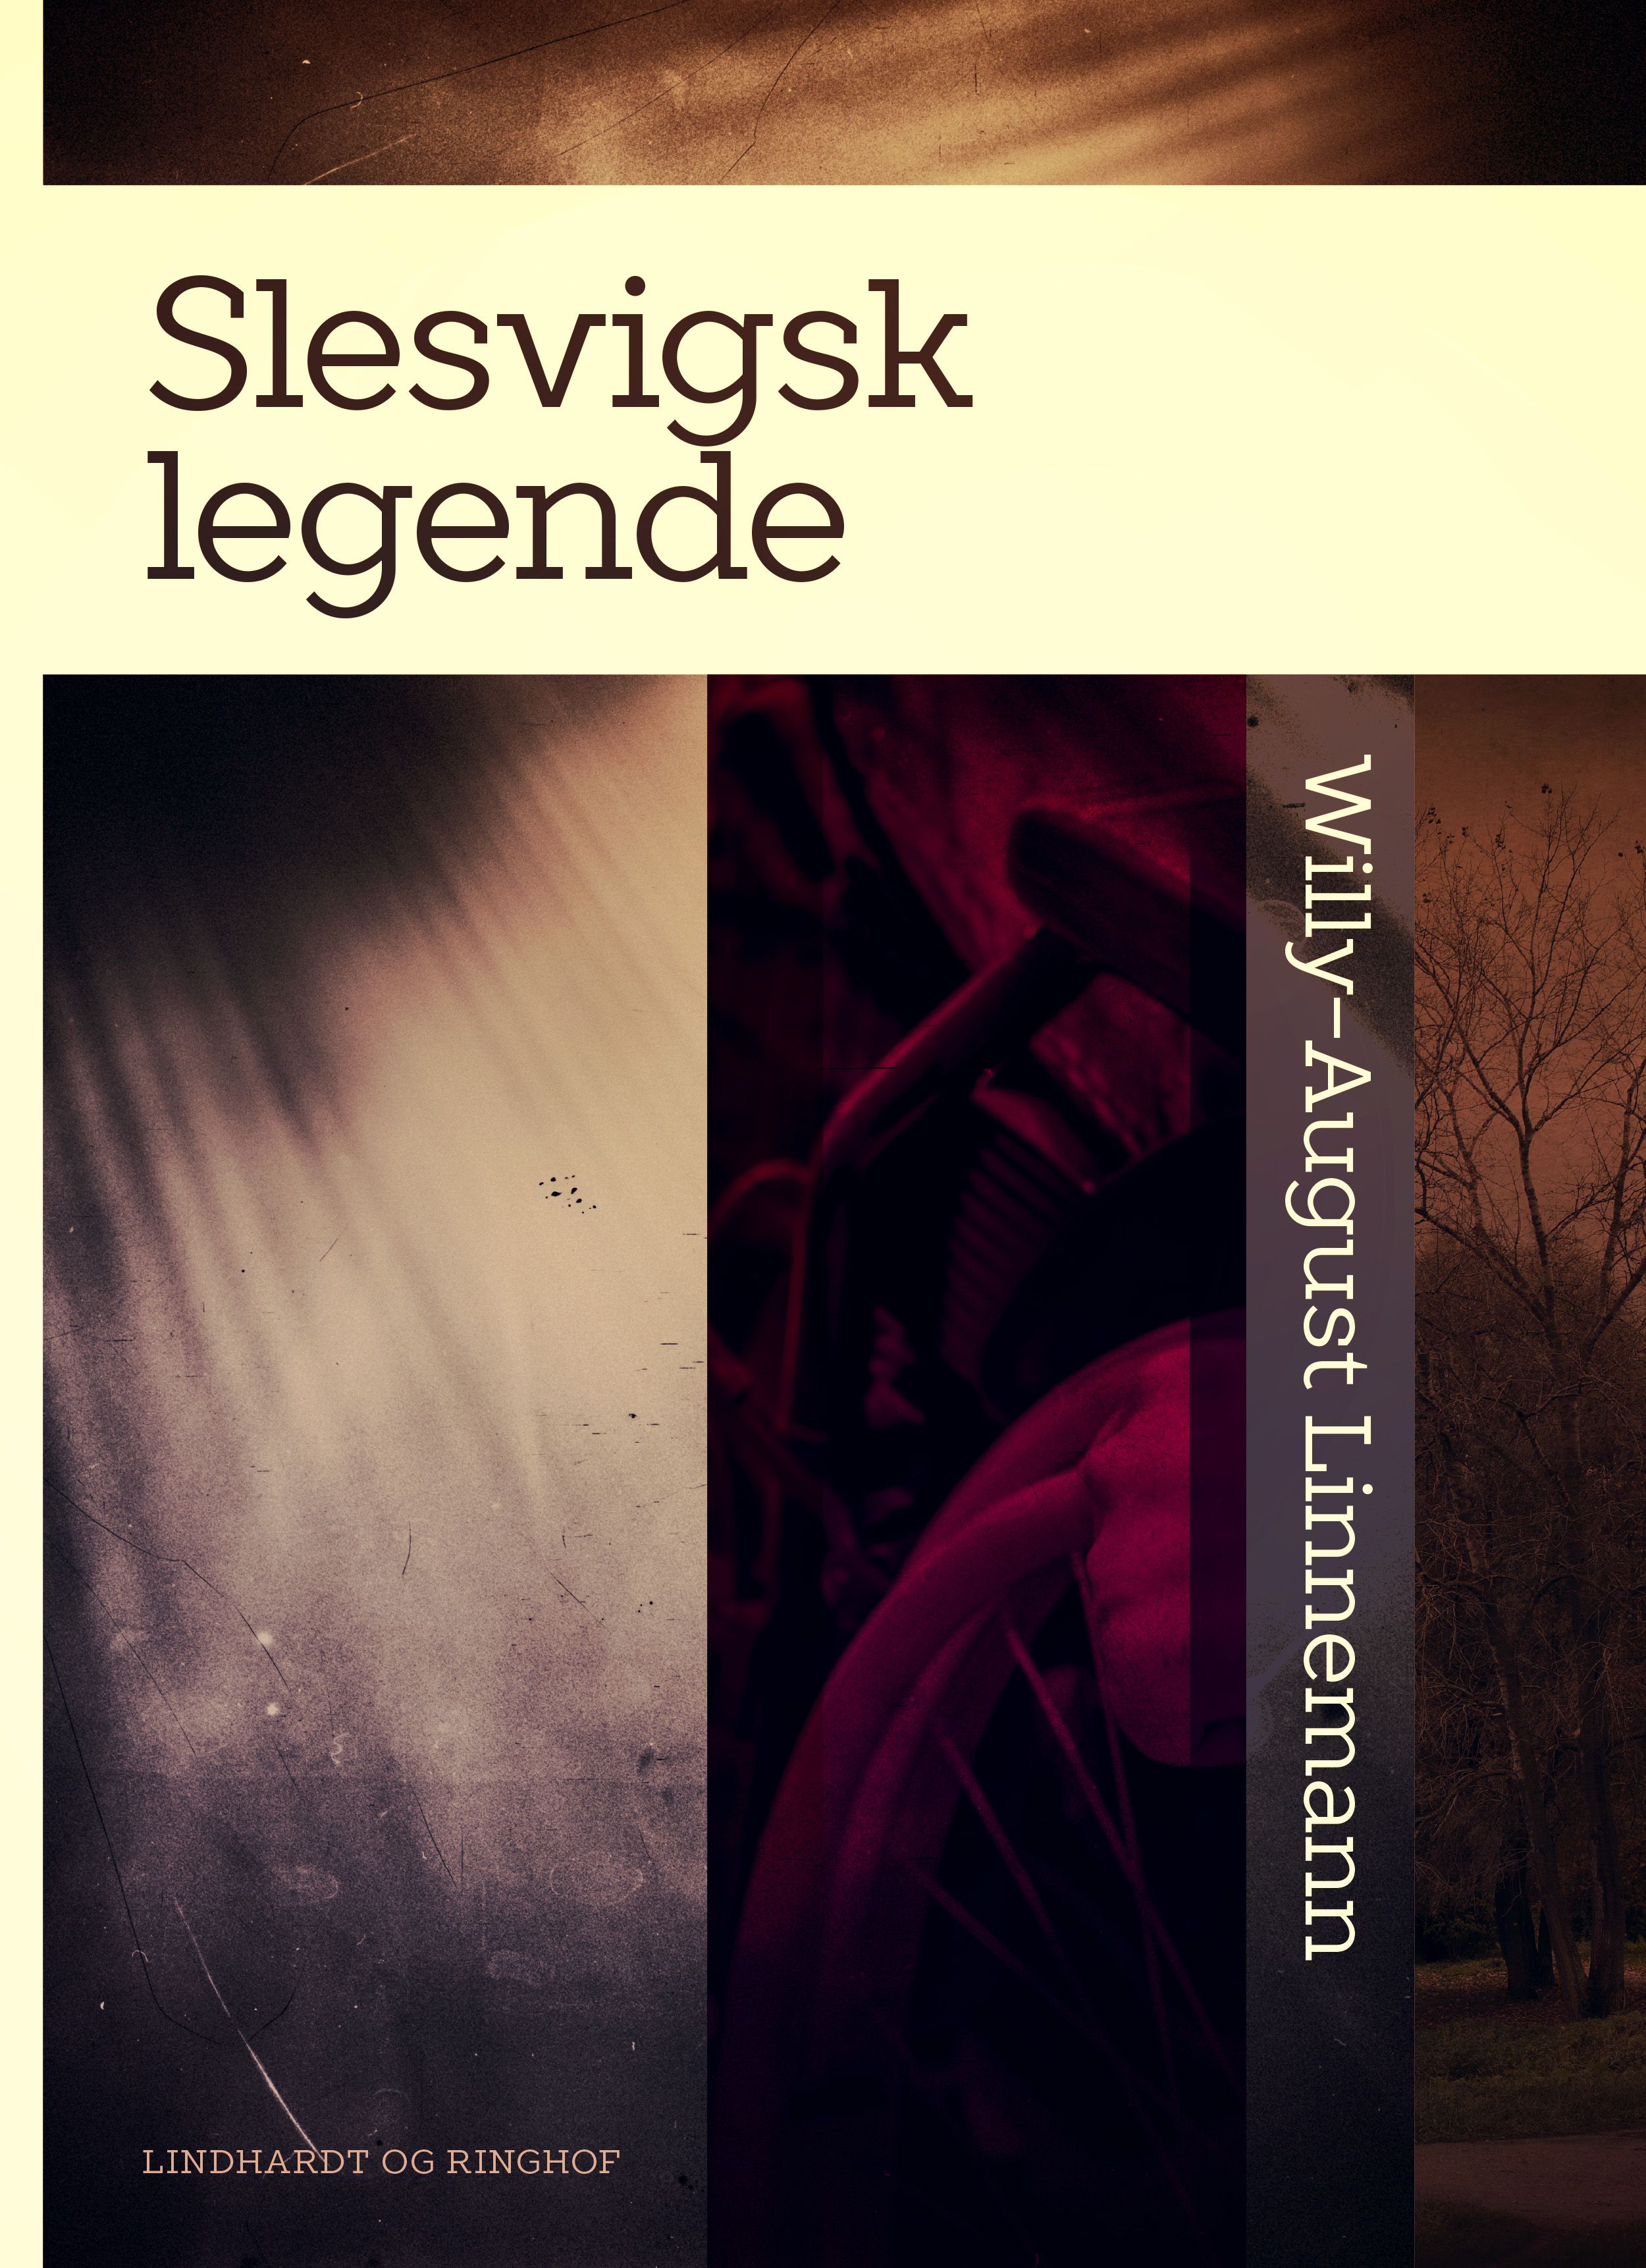 Slesvigsk legende, e-bok av Willy-August Linnemann